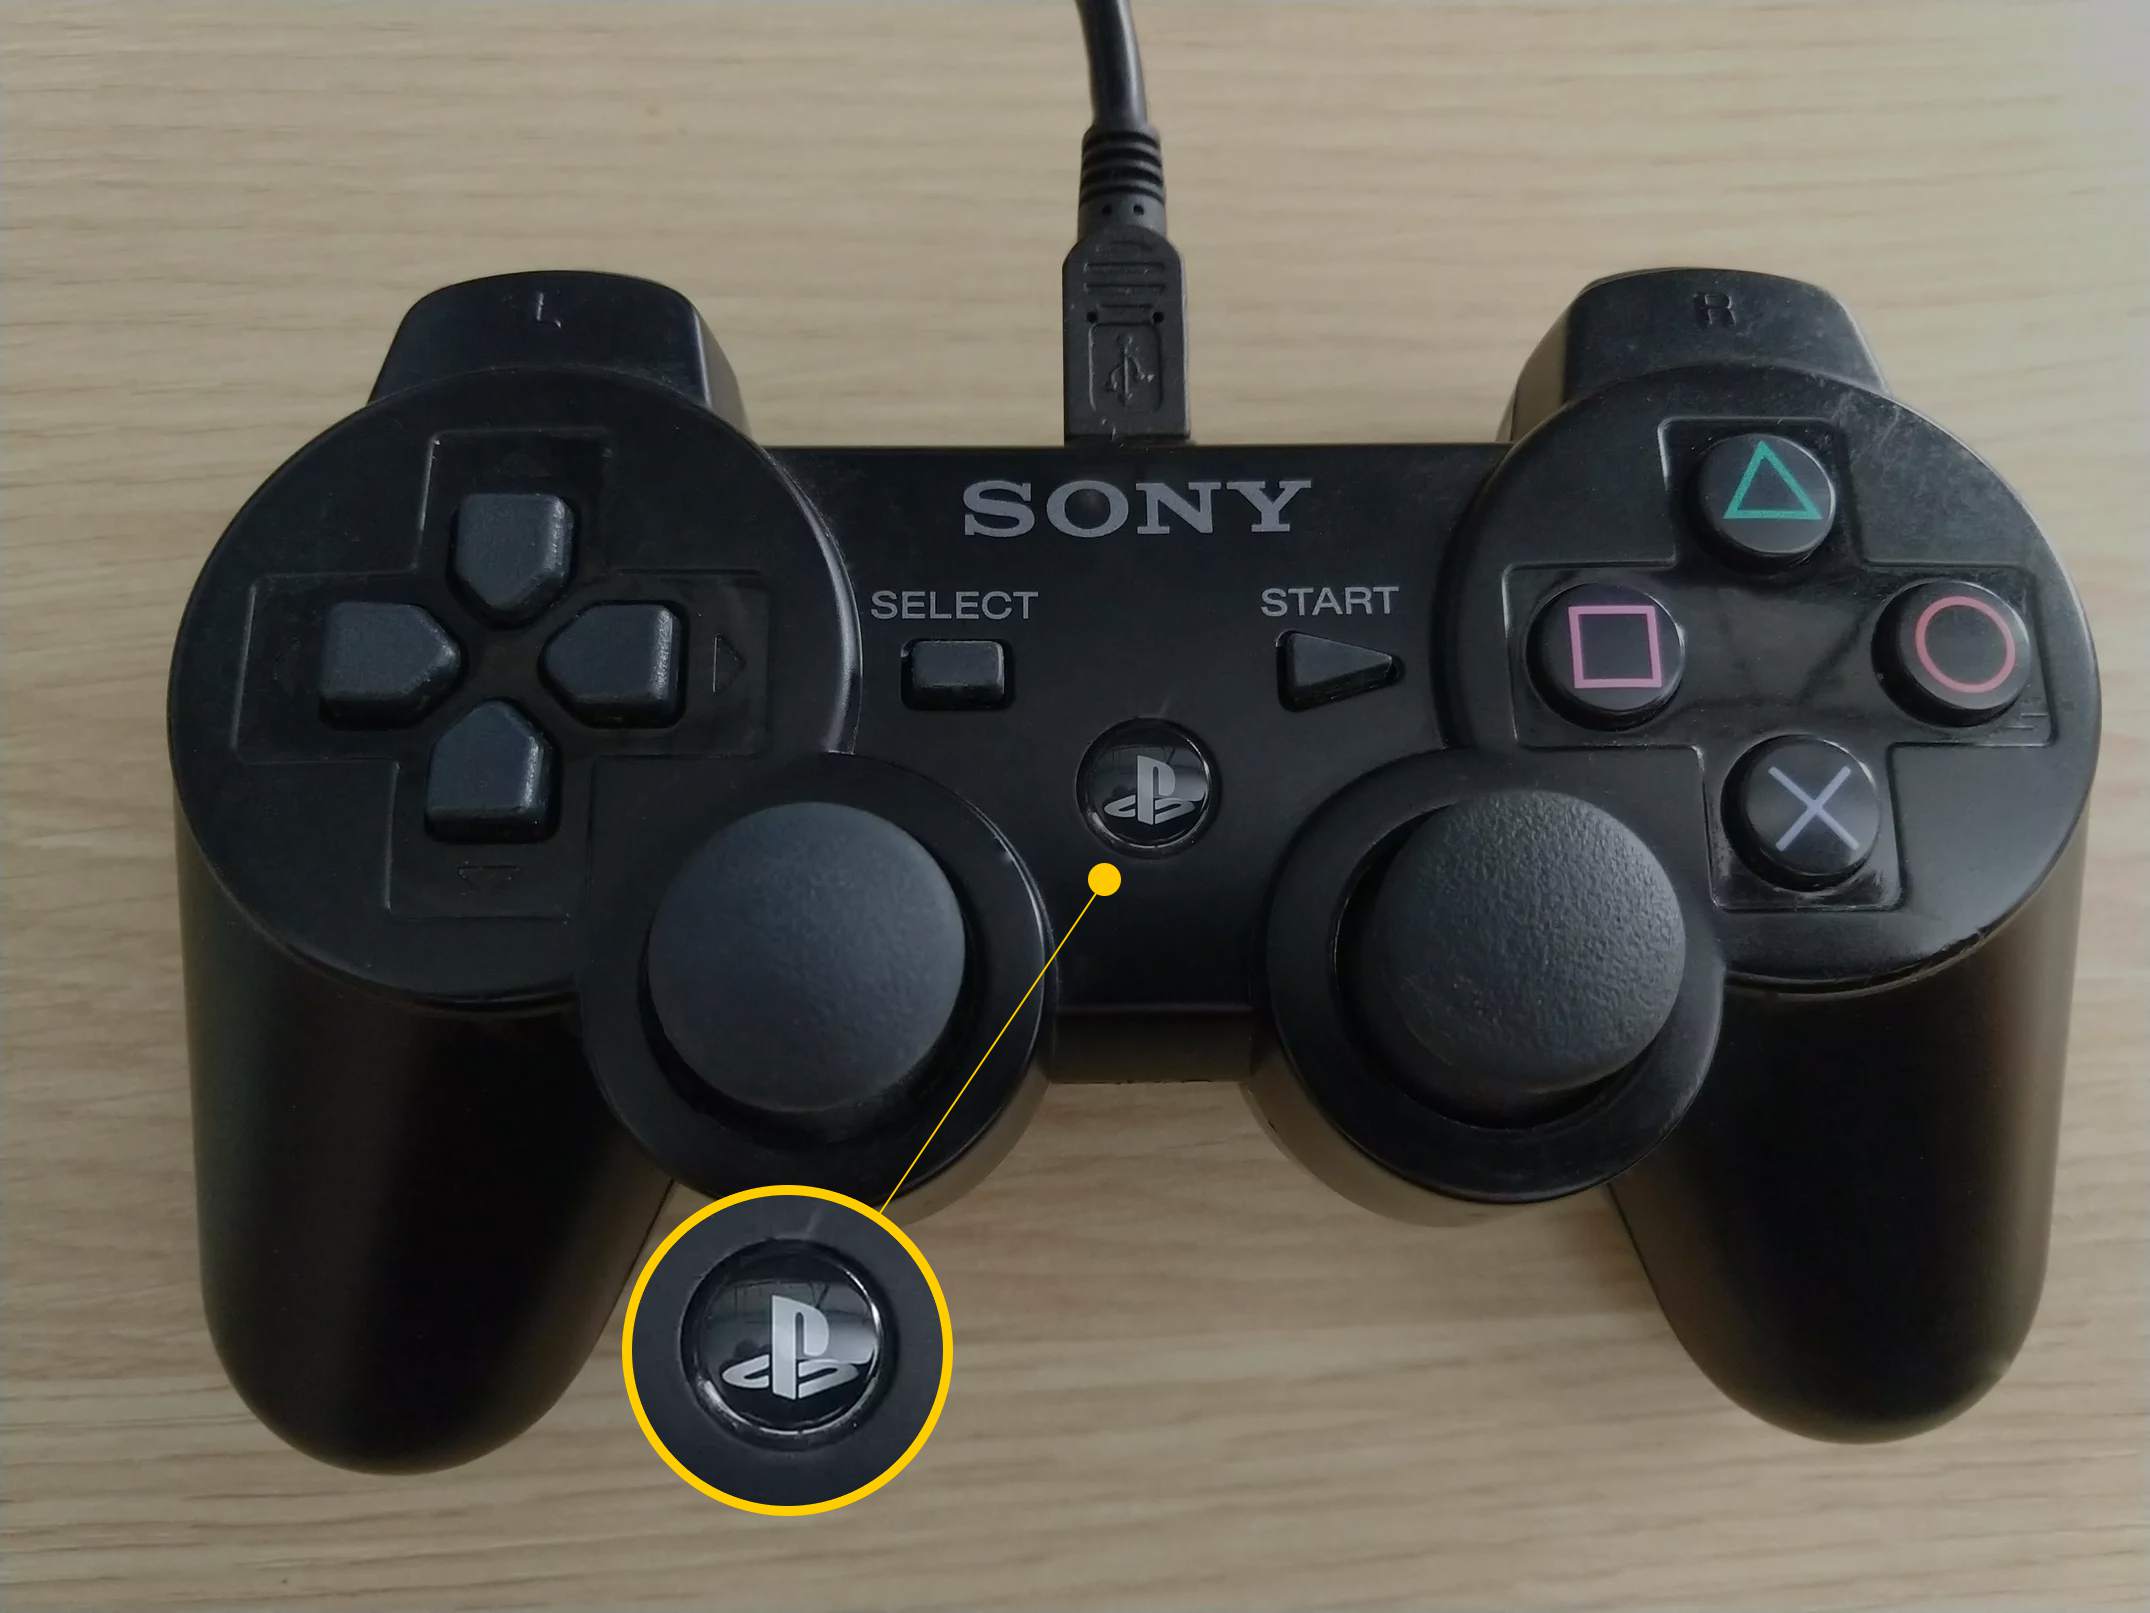 PS-knapp på PS3-kontrollenhet